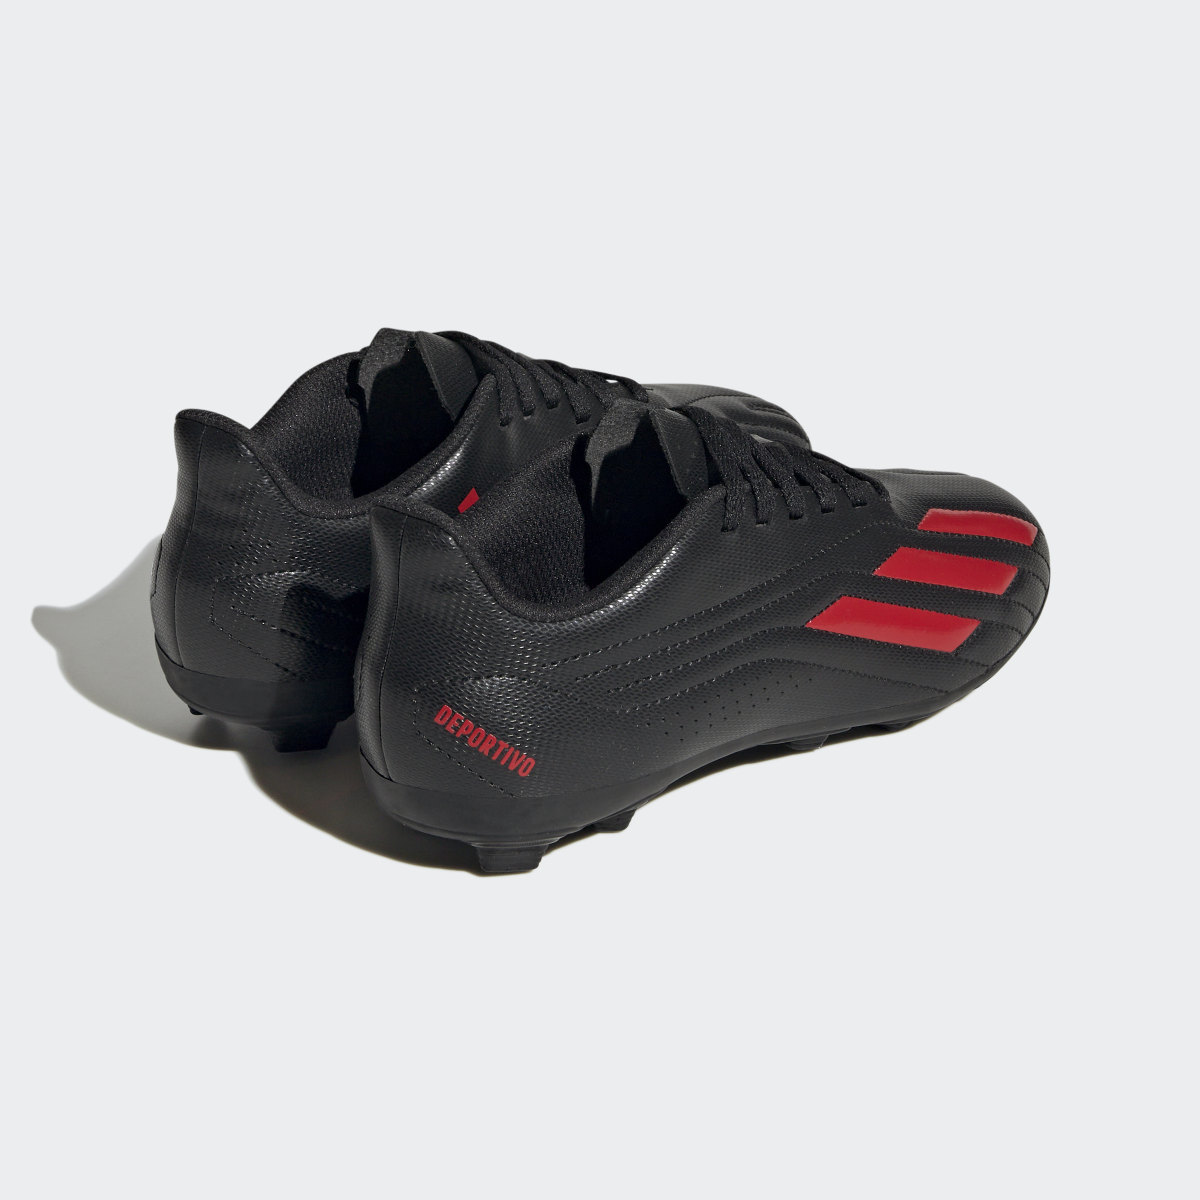 Adidas Deportivo II Flexible Ground Boots. 6